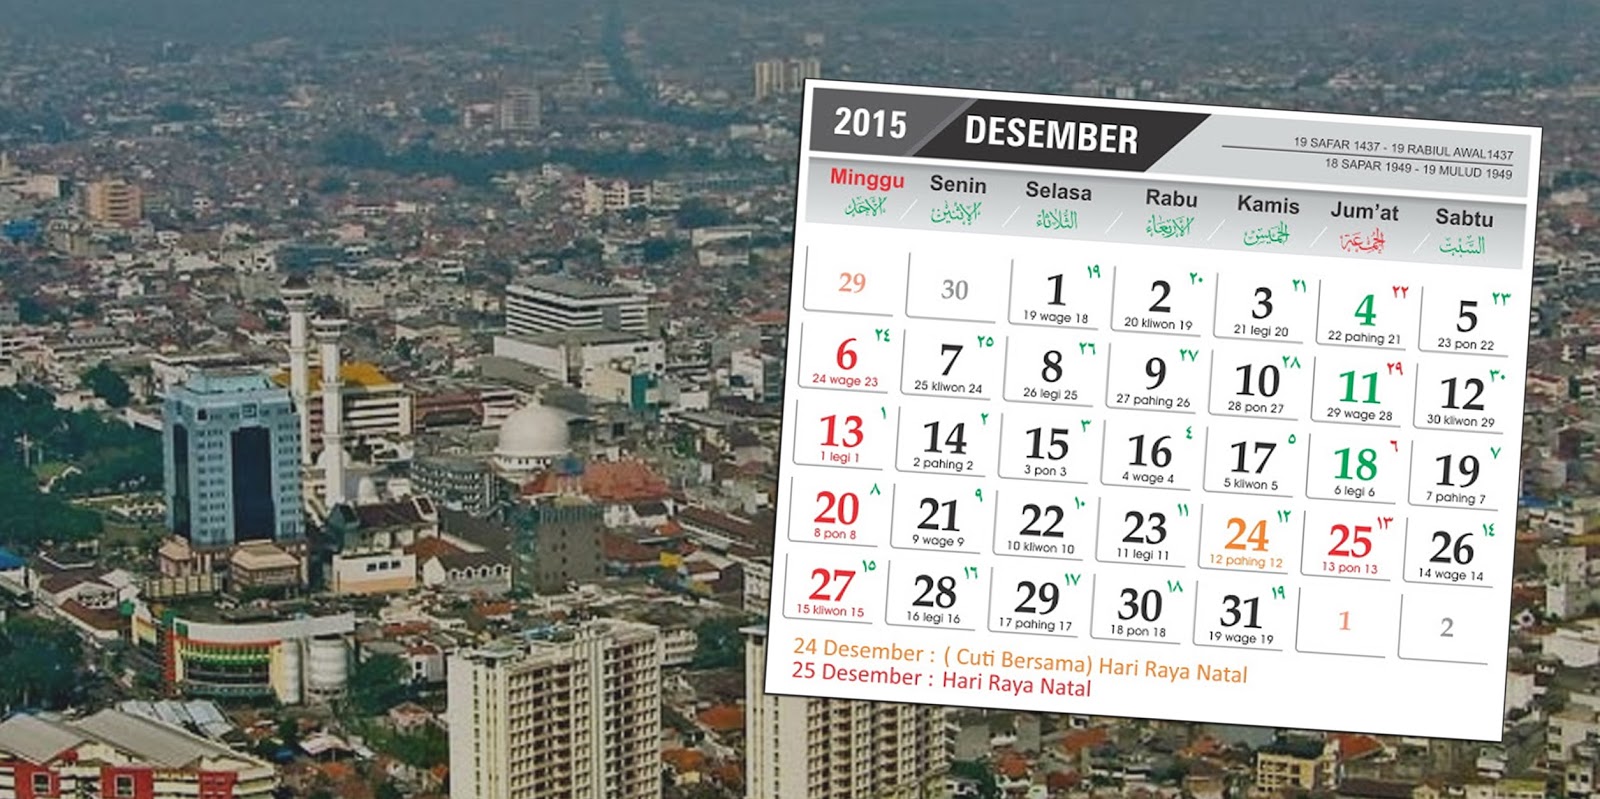 jadwal event Bandung Desember 2015